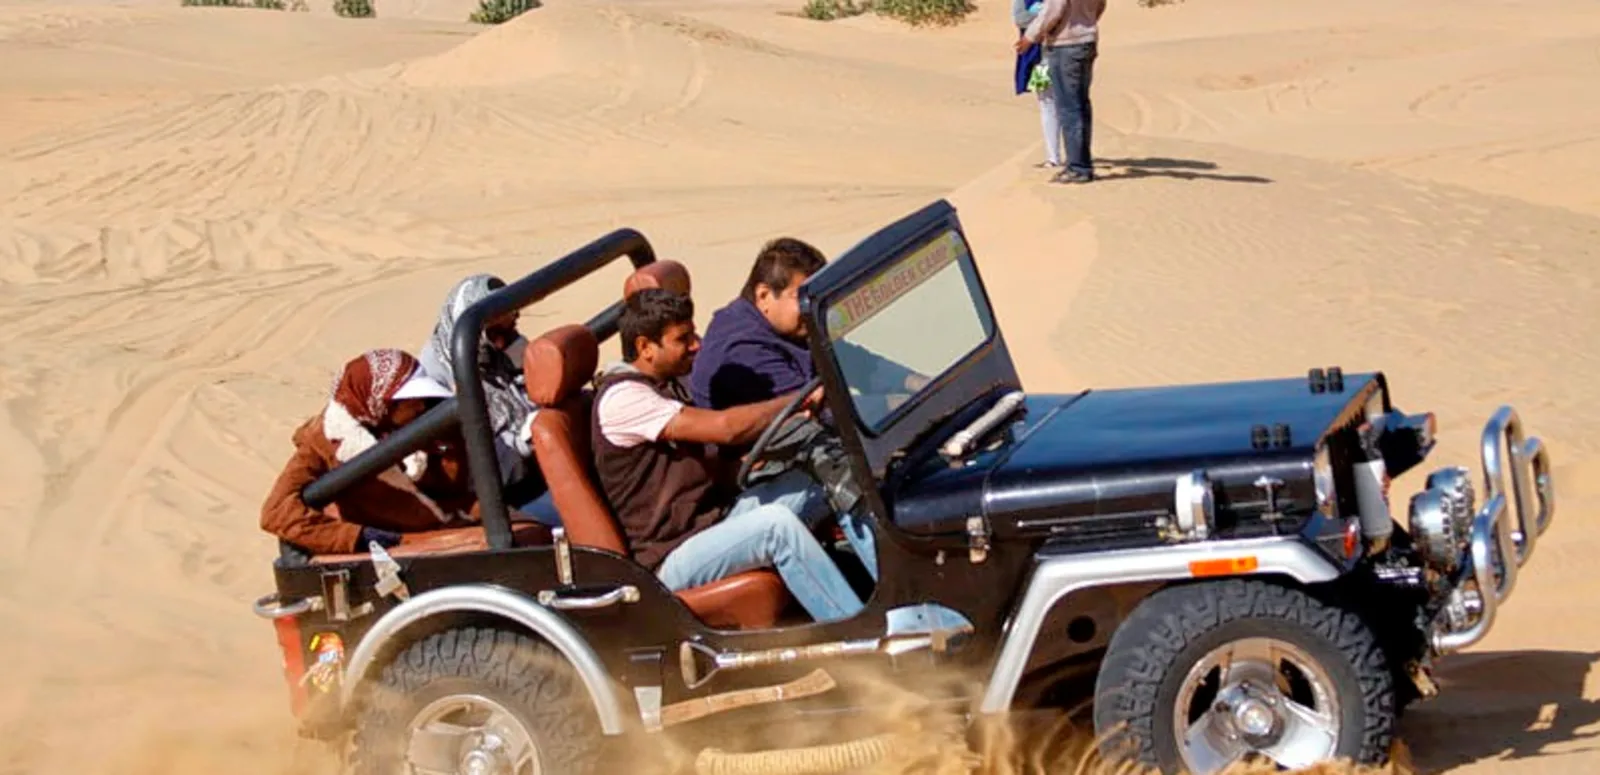 Jeep Safari in jaisalmer